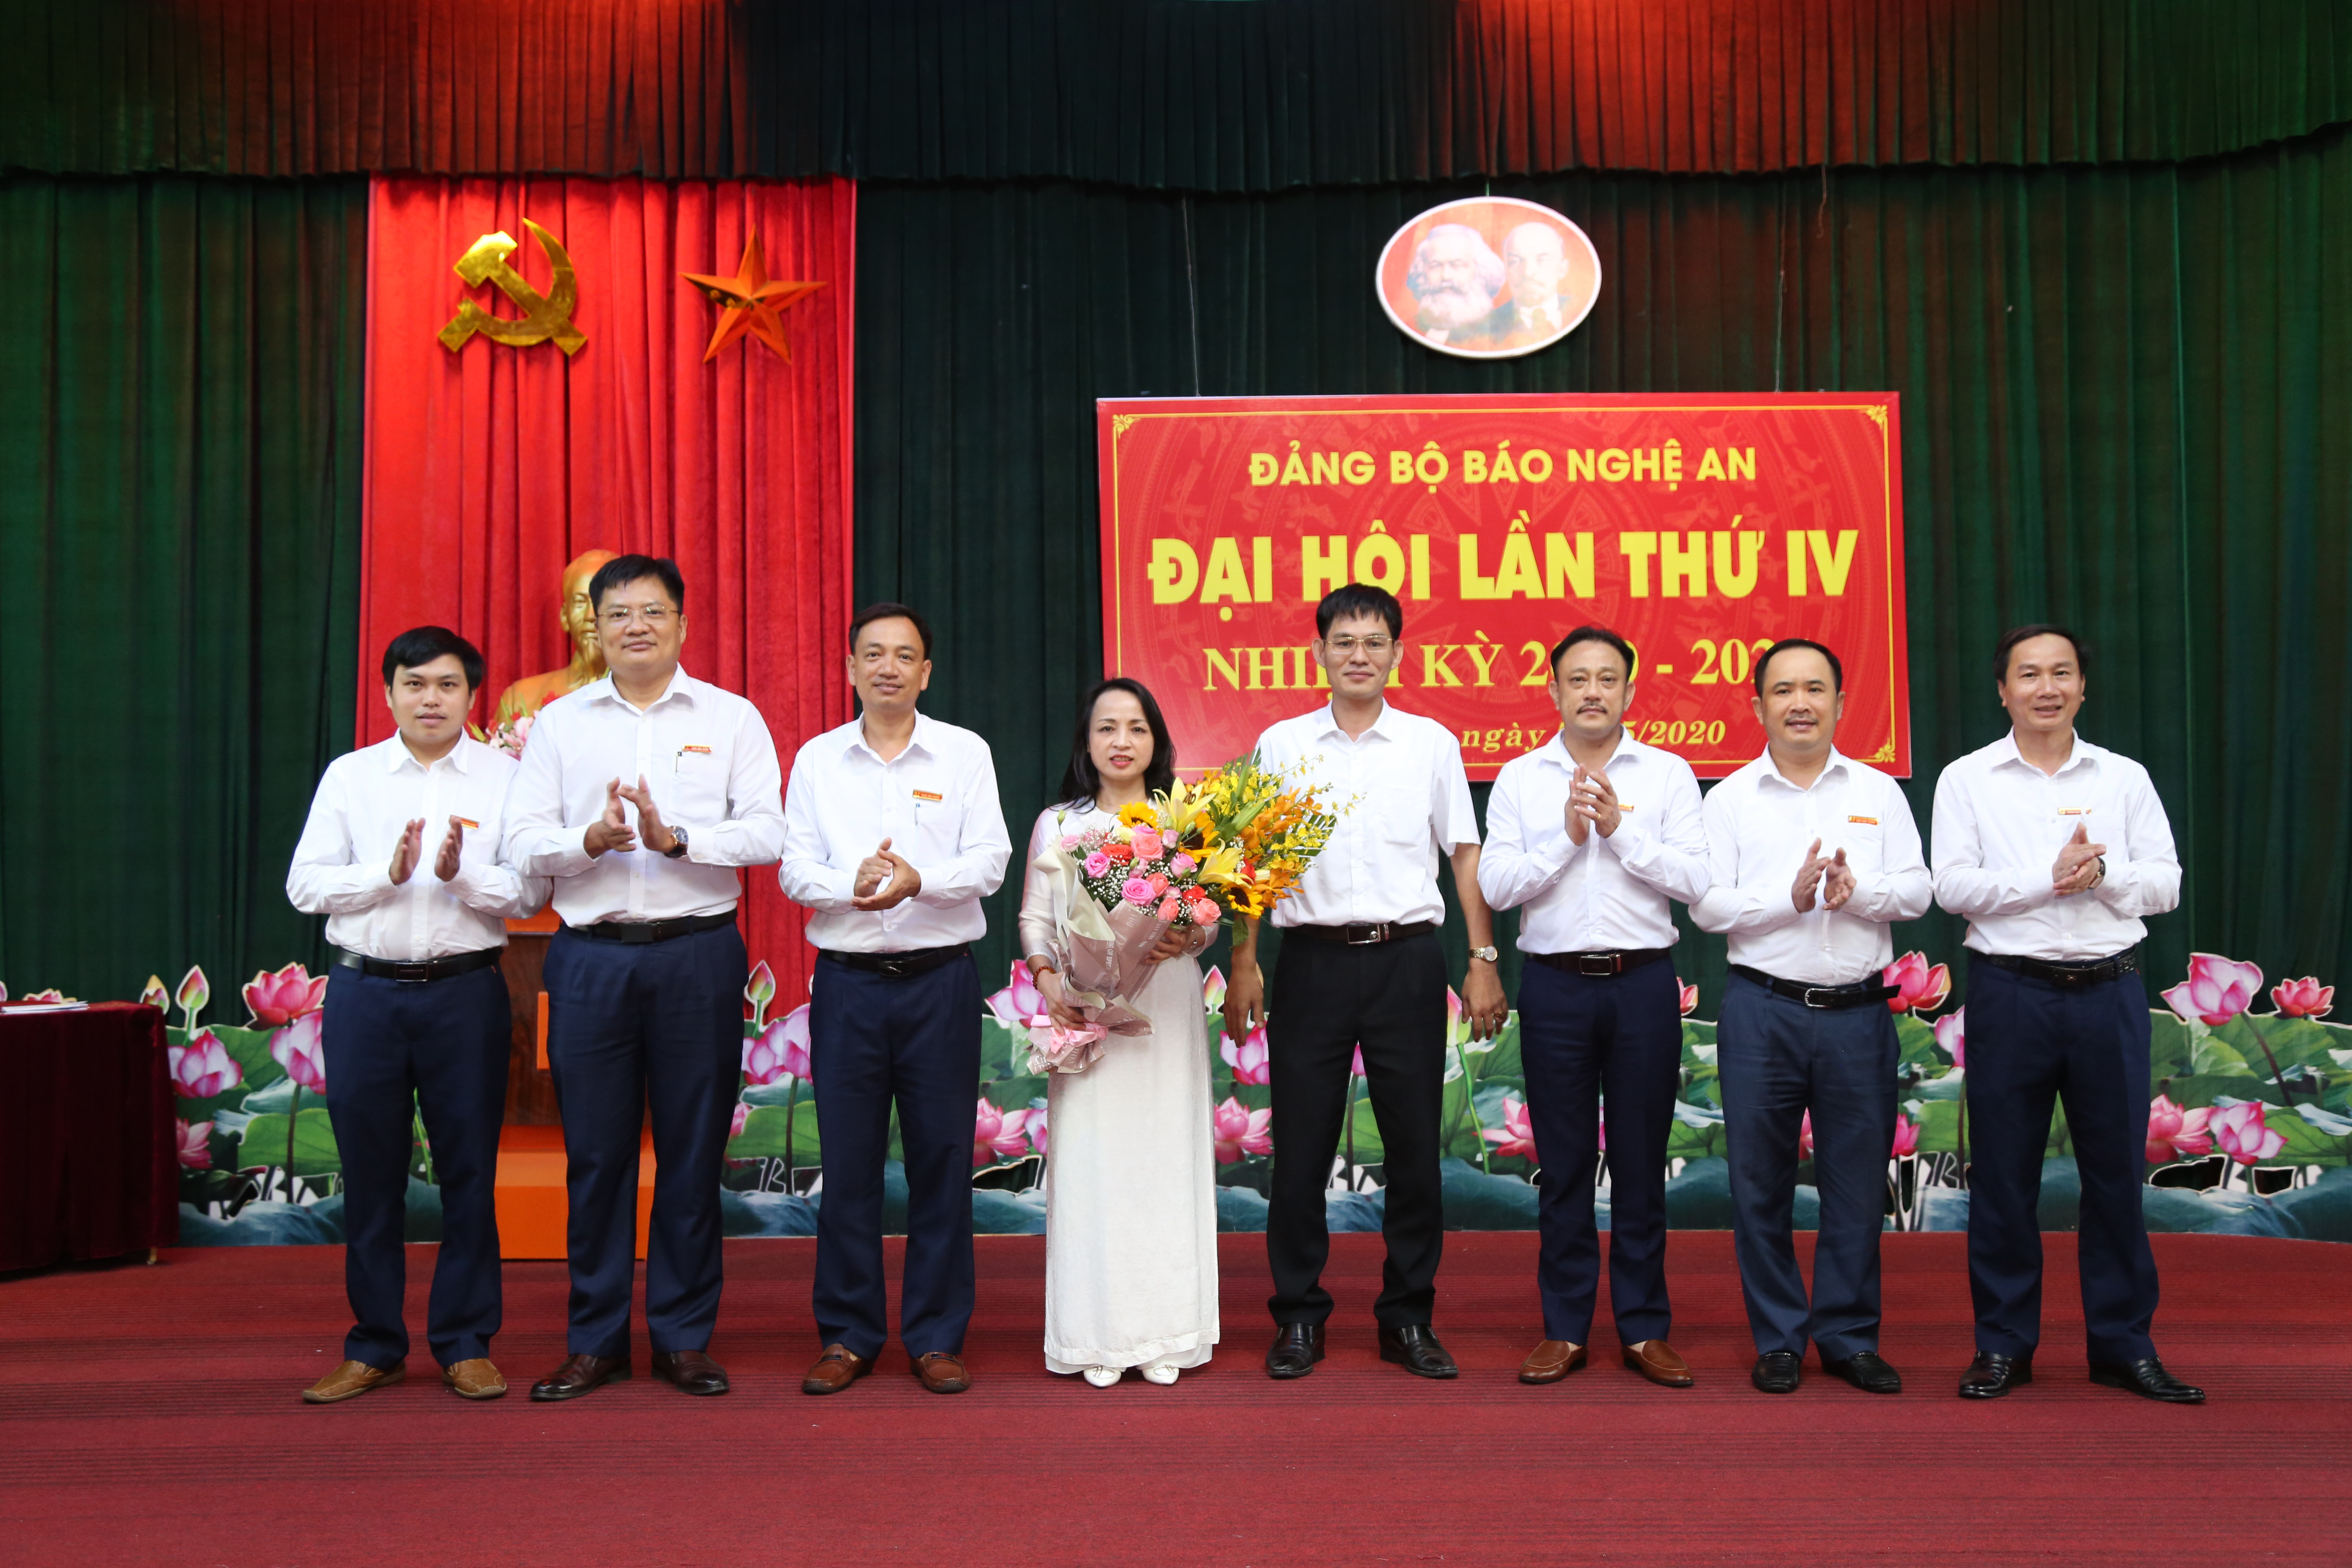 Ra mắt Ban chấp hành Đảng bộ Báo Nghệ An khóa IV, nhiệm kỳ 2020-2025. Ảnh: Đào Tuấn